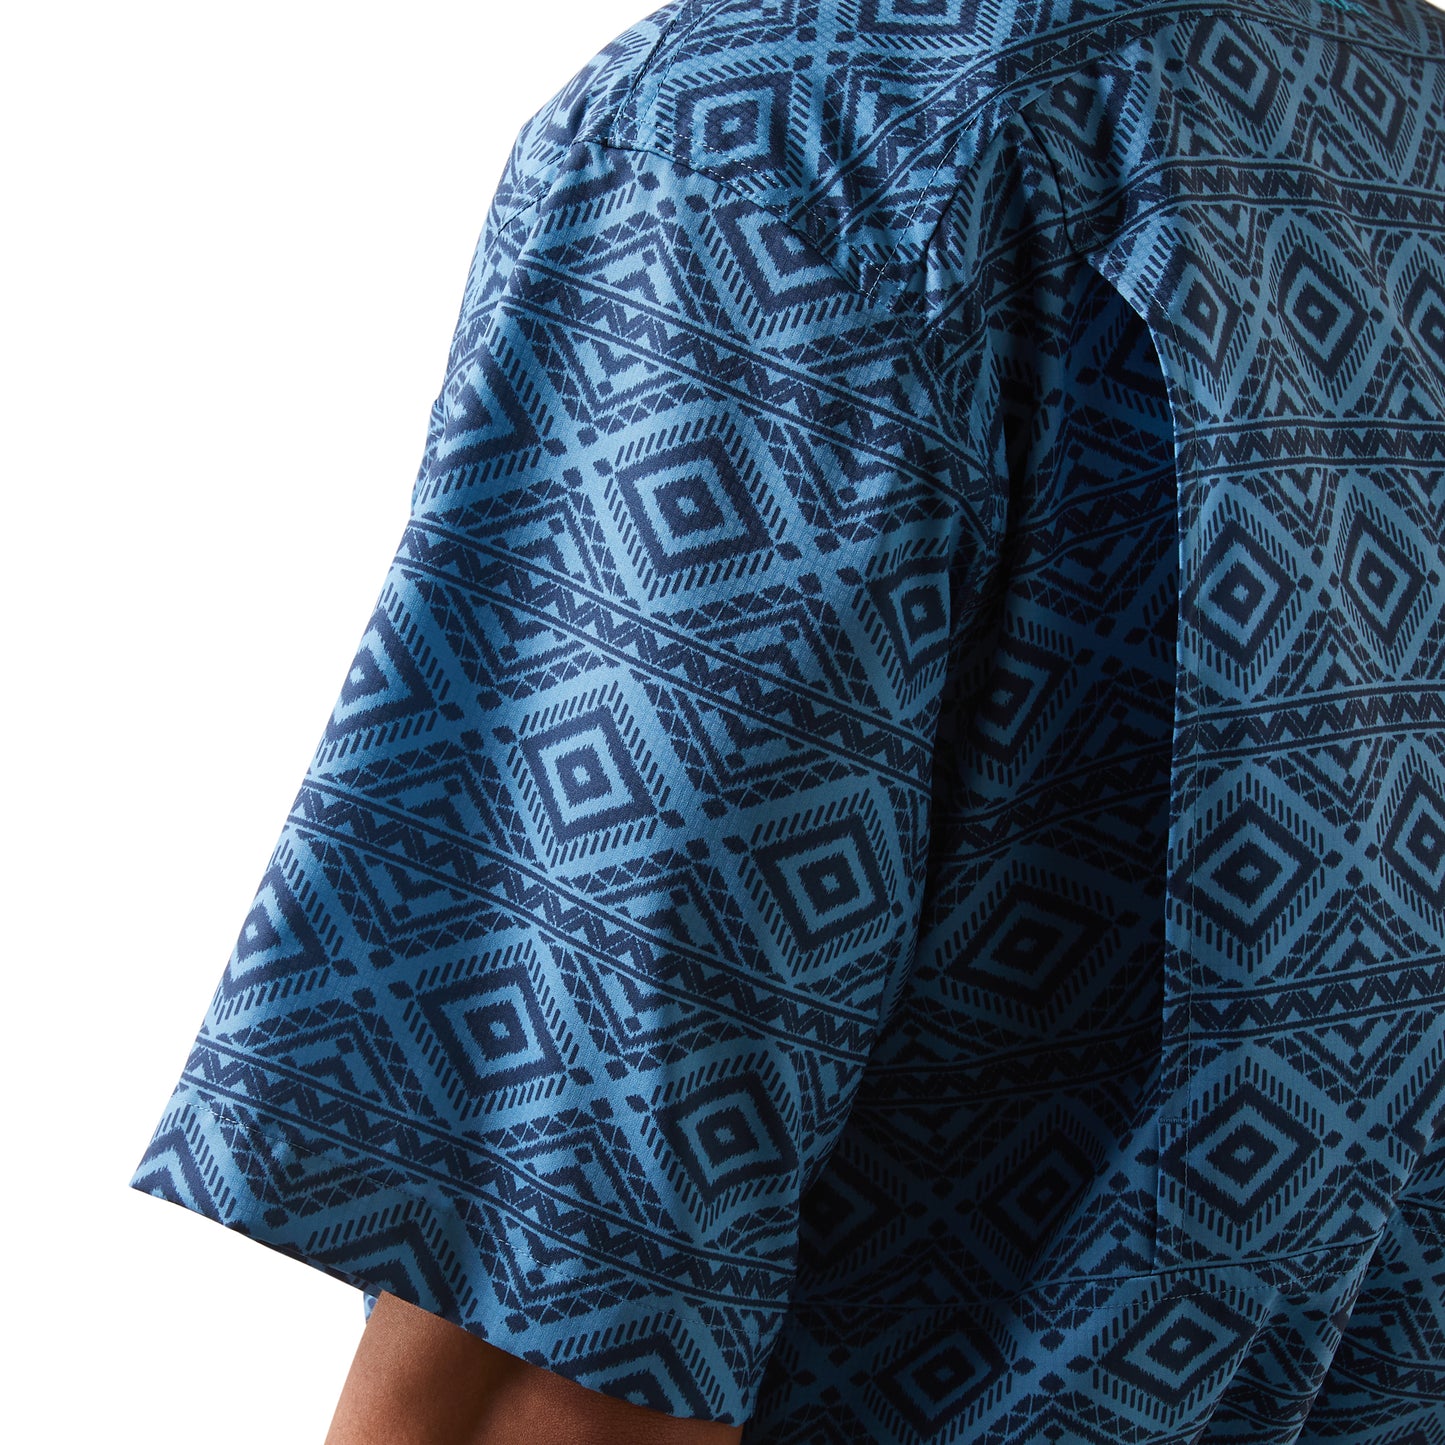 Ariat Men's VentTEK Classic Rainwater Blue Button Down Shirt 10043512